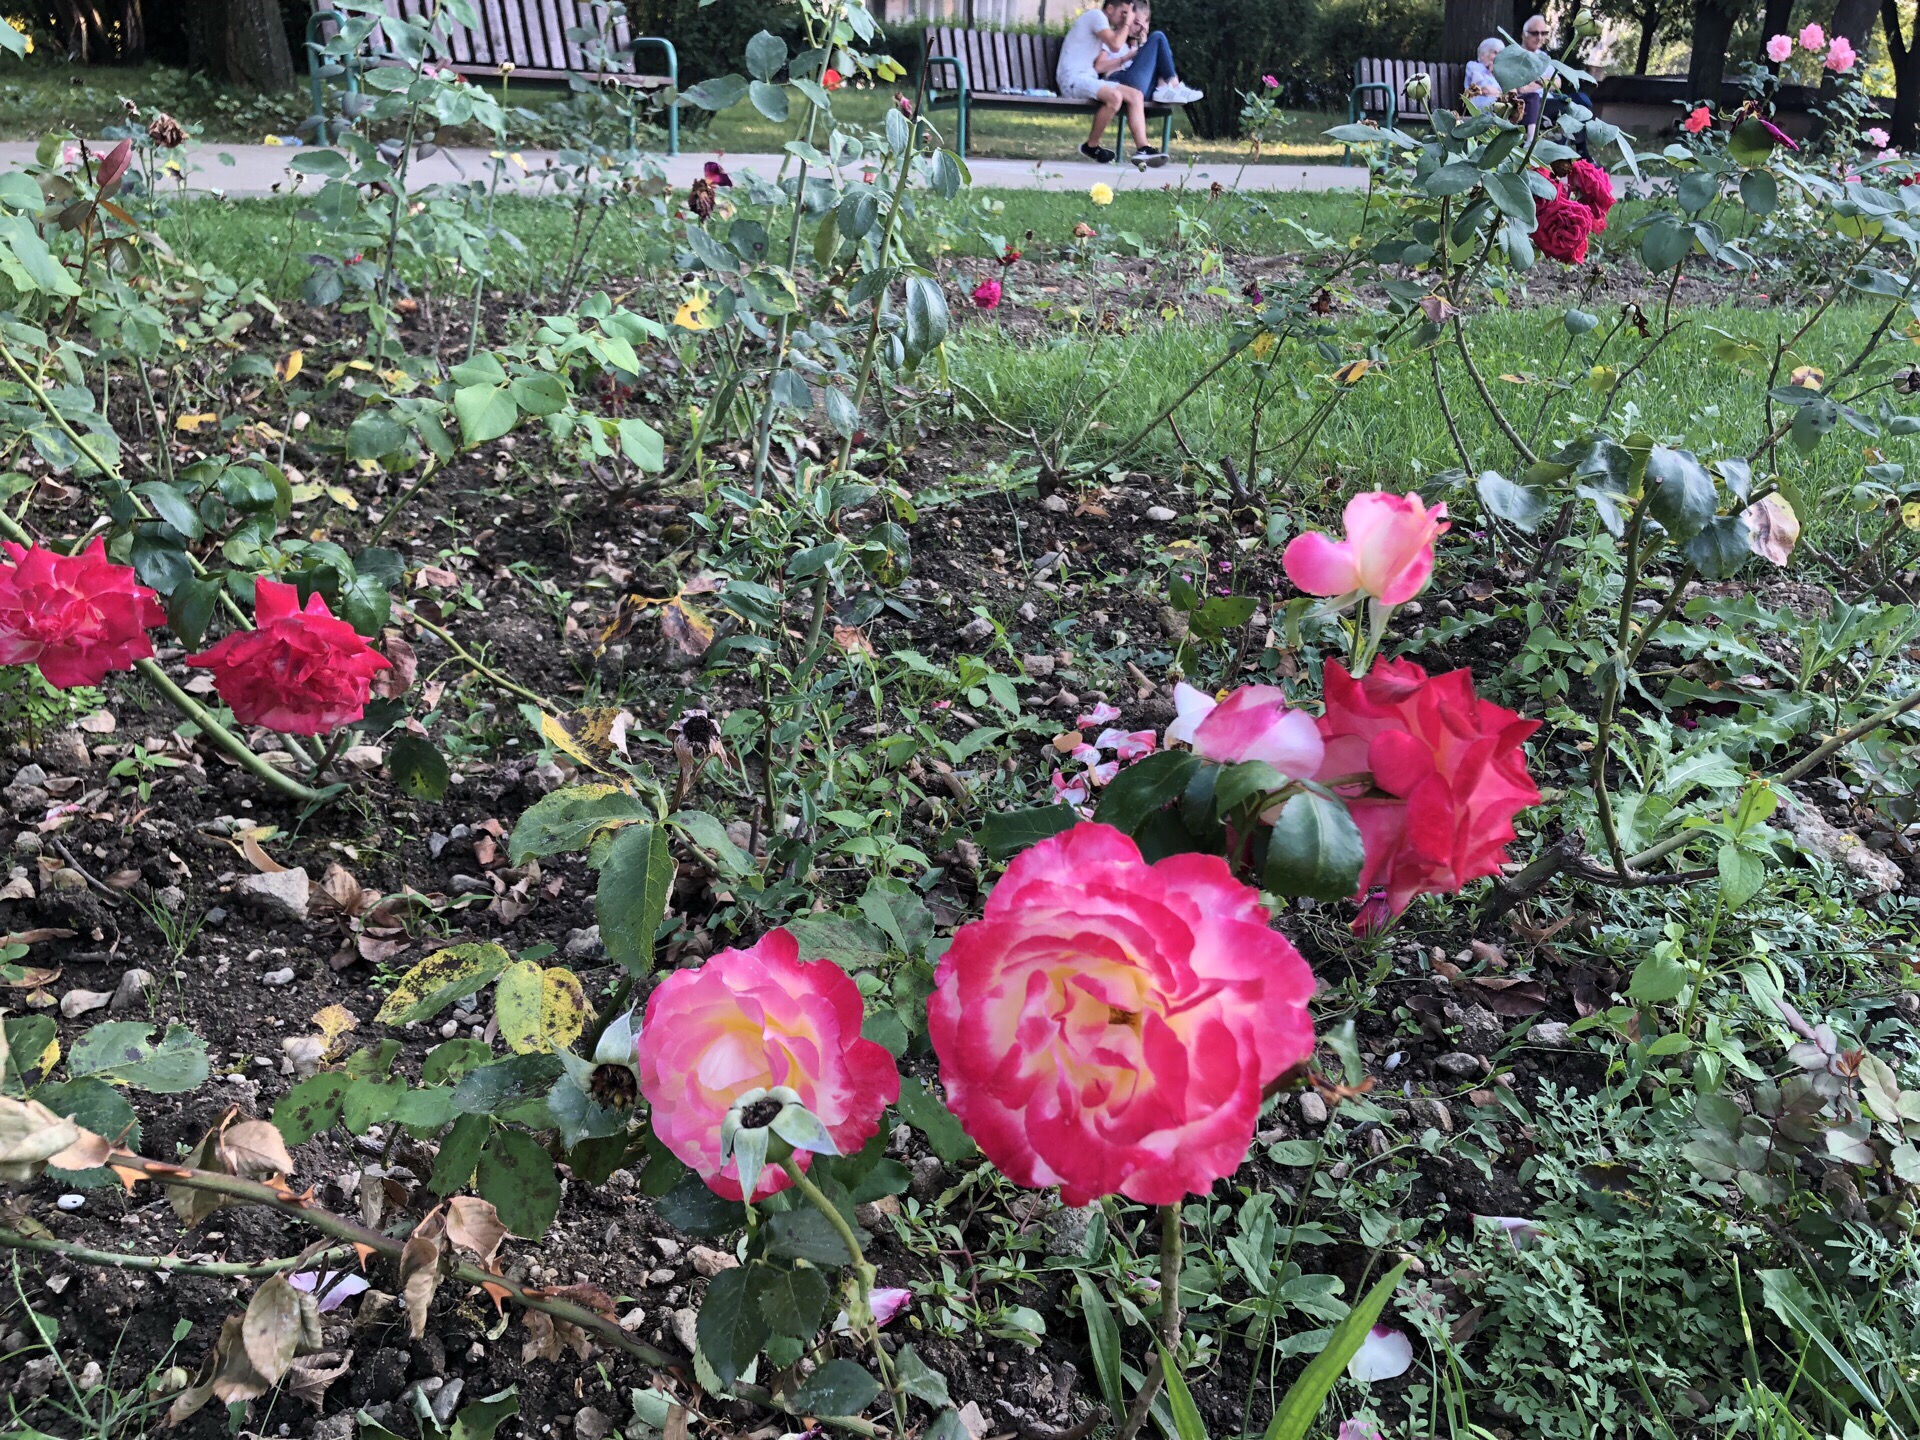 玫瑰国里的玫瑰城-卡赞勒克，位于玫瑰谷中。从十七世纪发展为玫瑰油制造中心，培育出了大量油用和观赏玫瑰